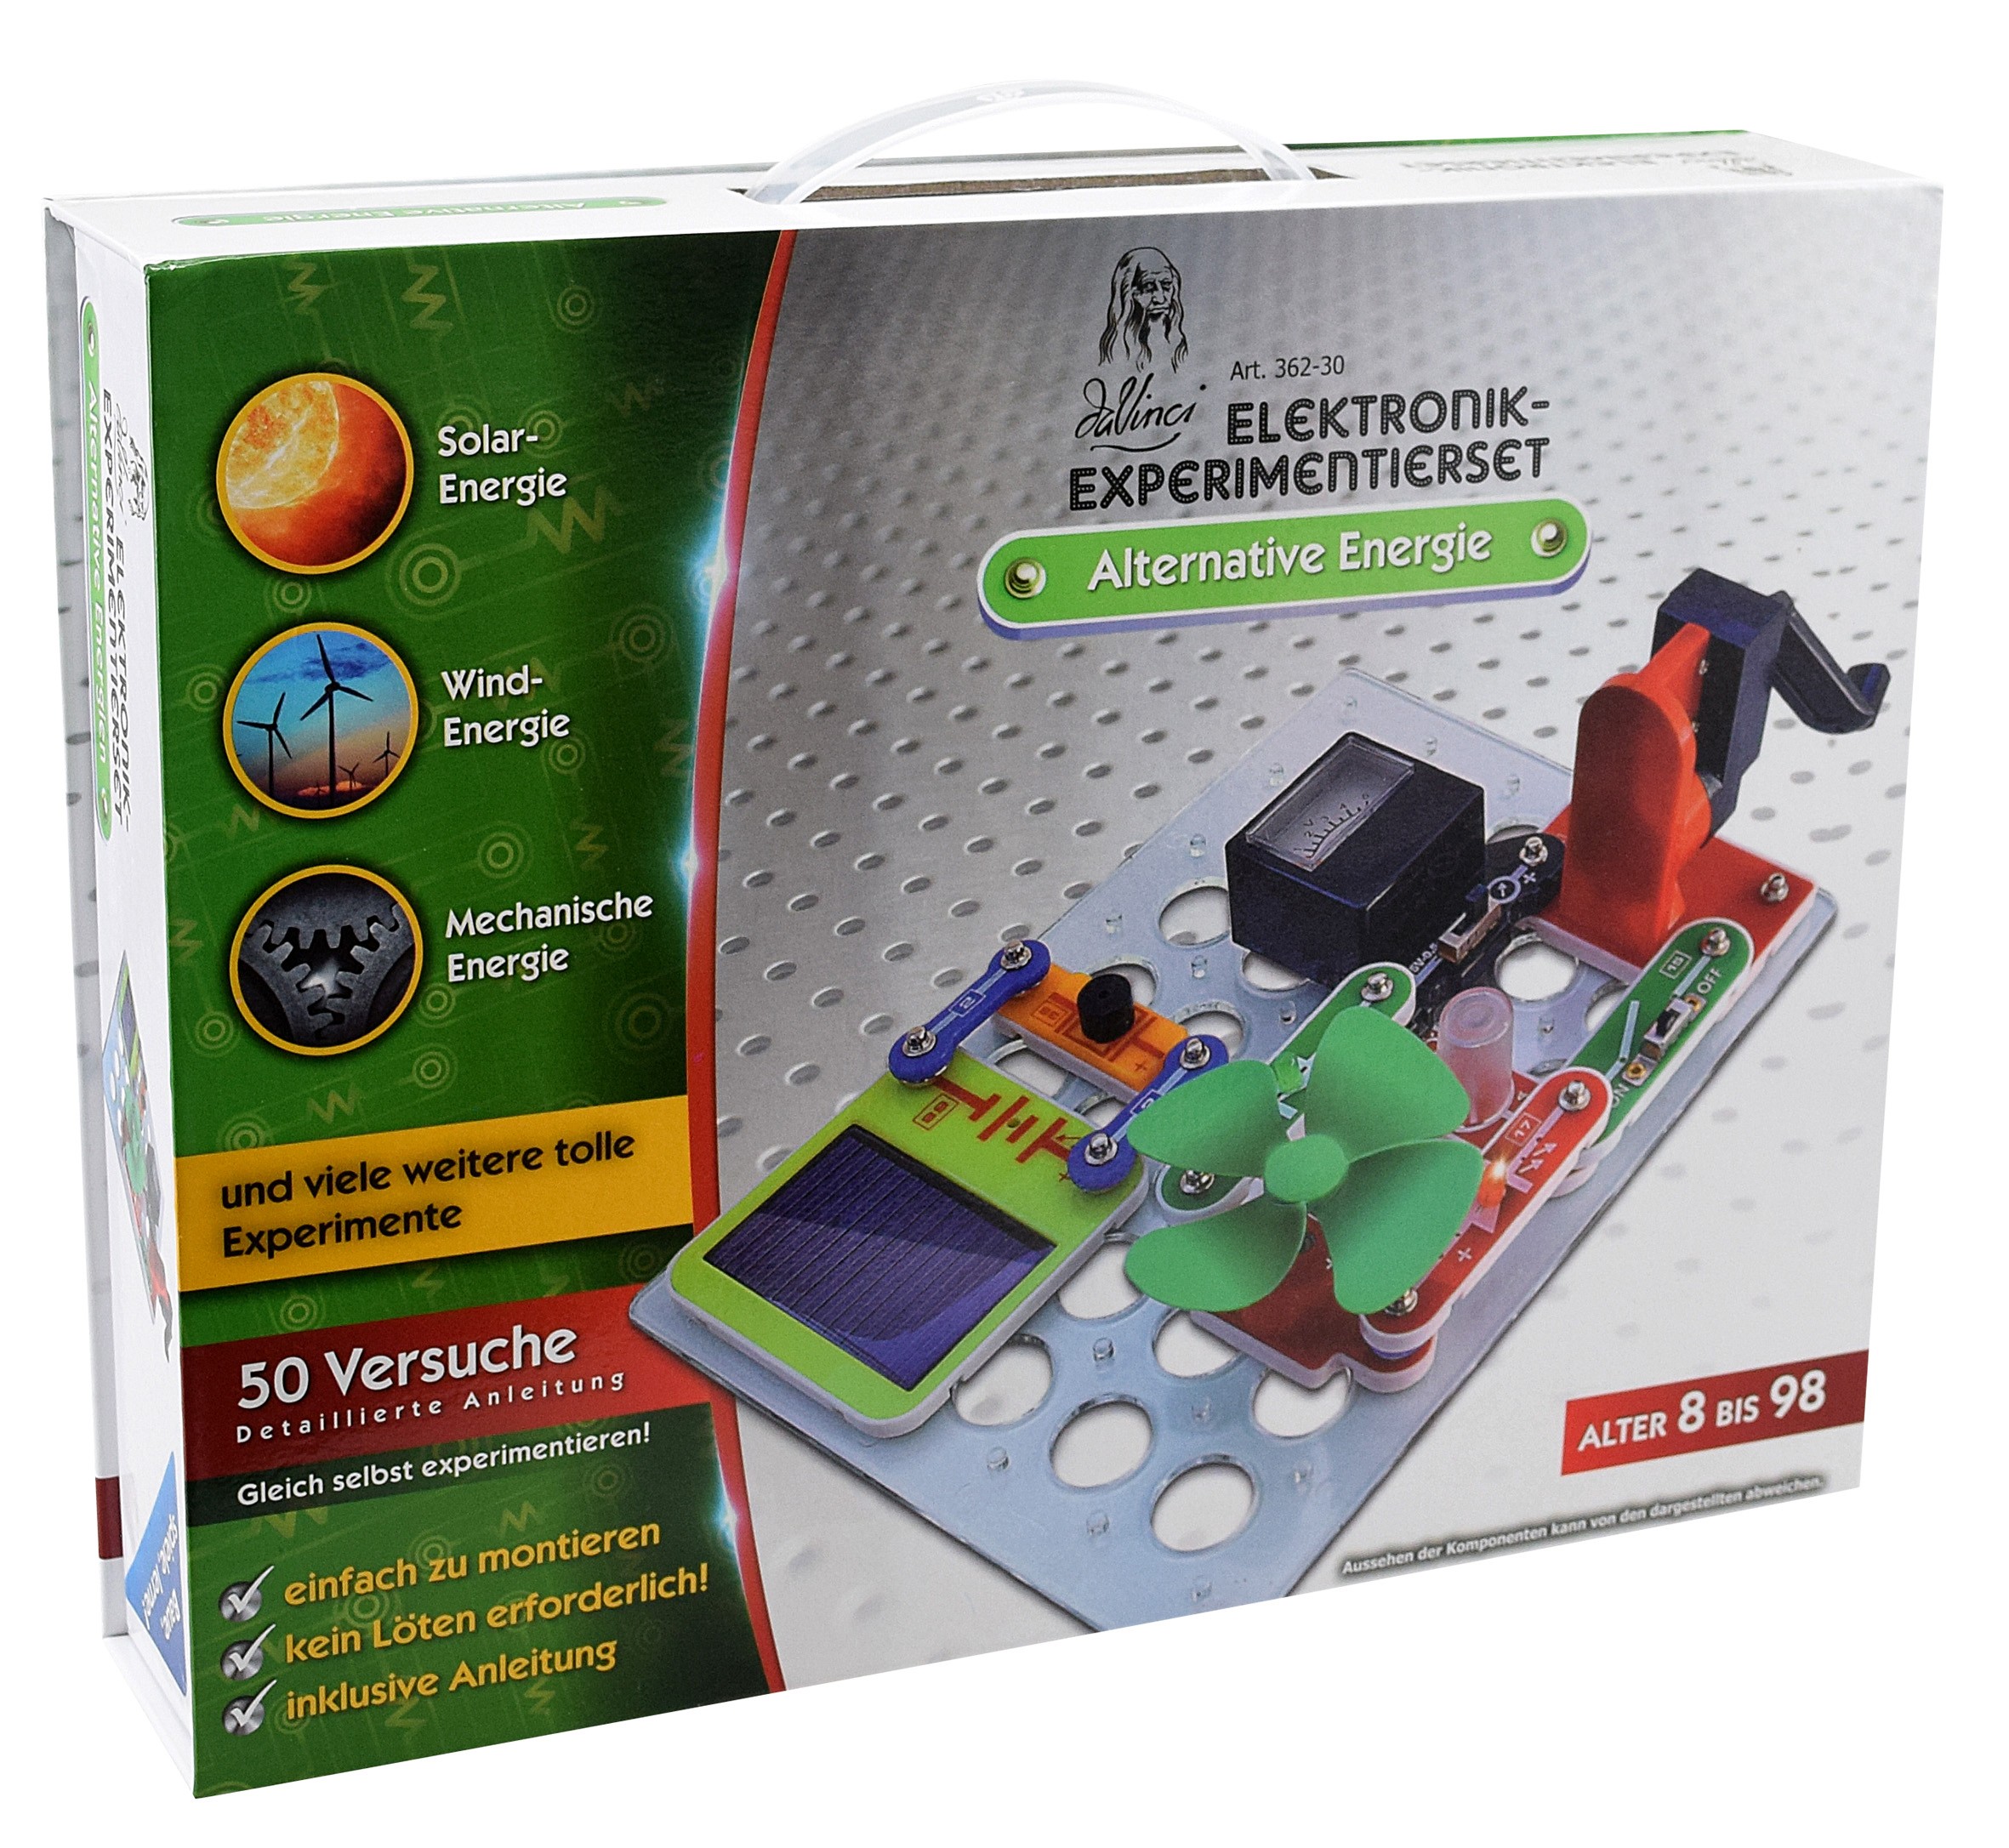 Alternative Energien DaVinci 362-30 Elektronik-Experimentierset für Kinder und Erwachsene